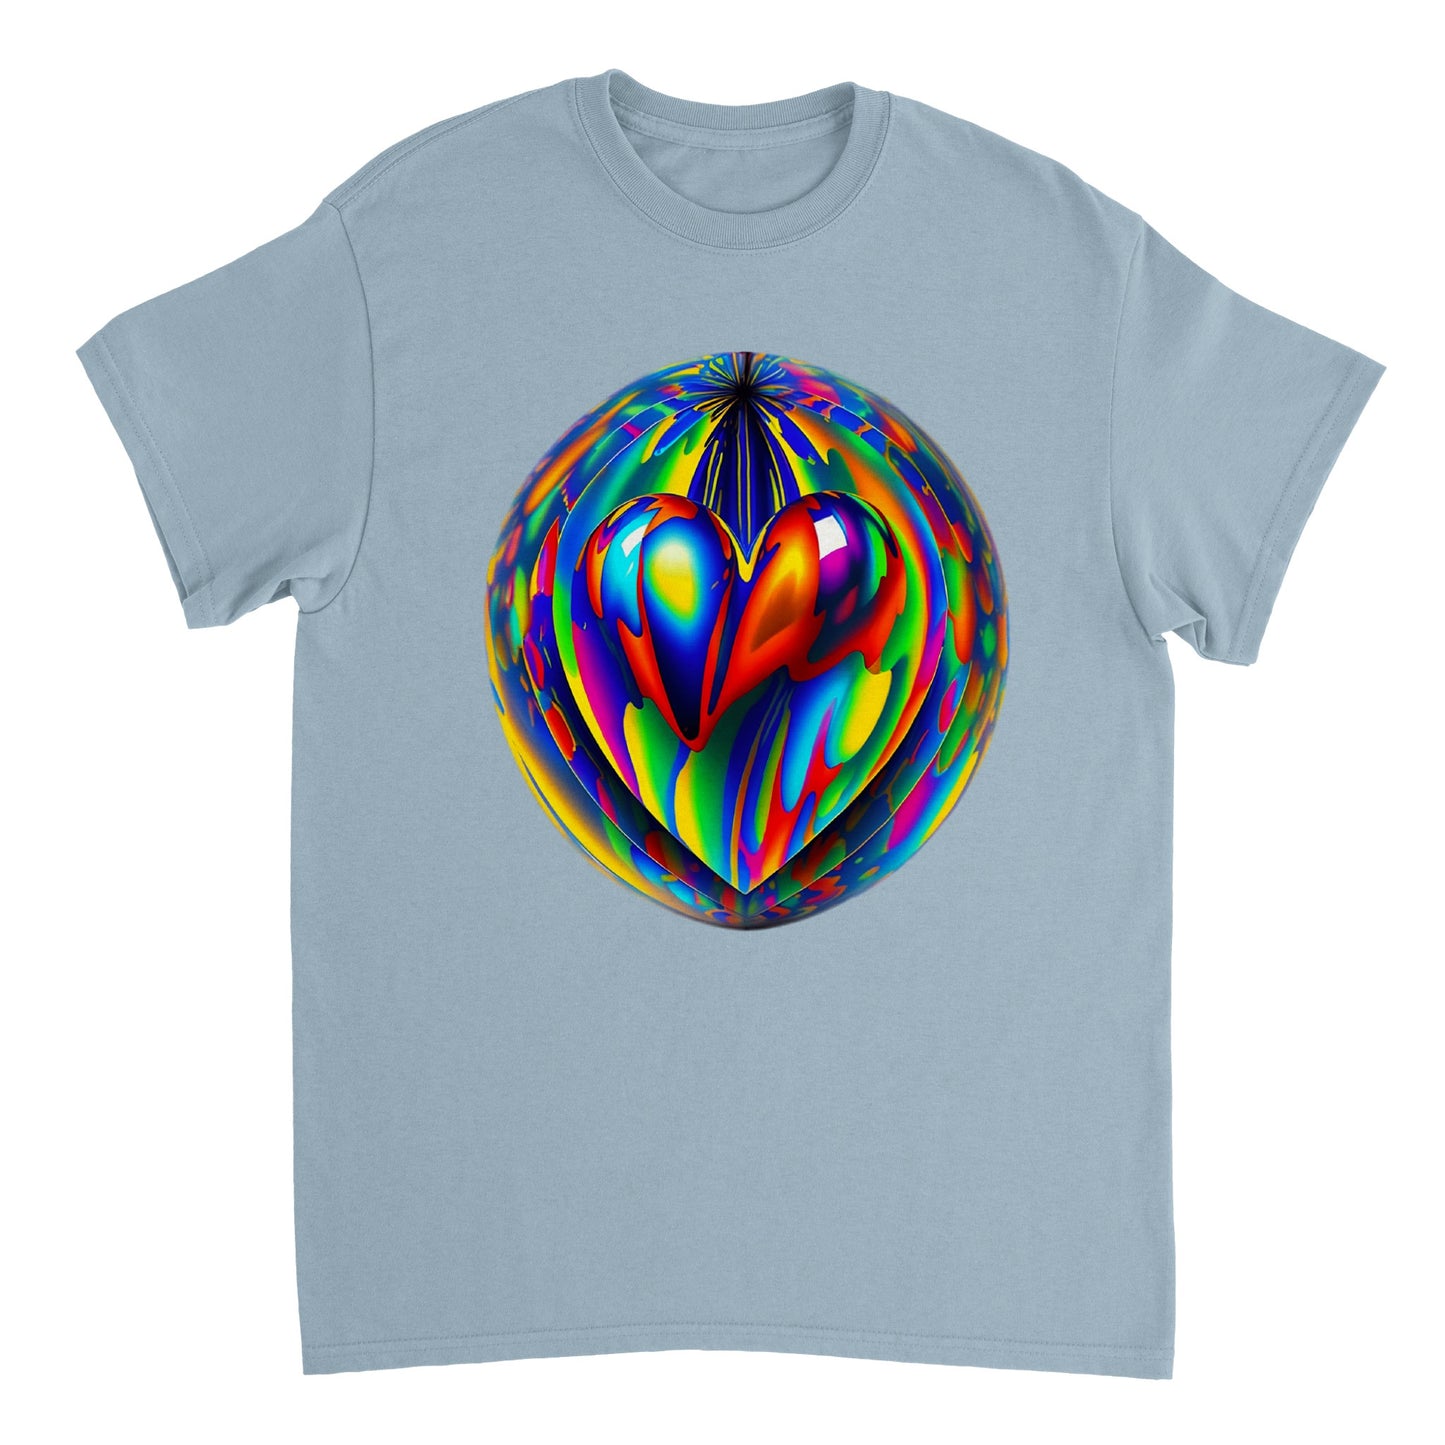 Love Heart - Heavyweight Unisex Crewneck T-shirt 53